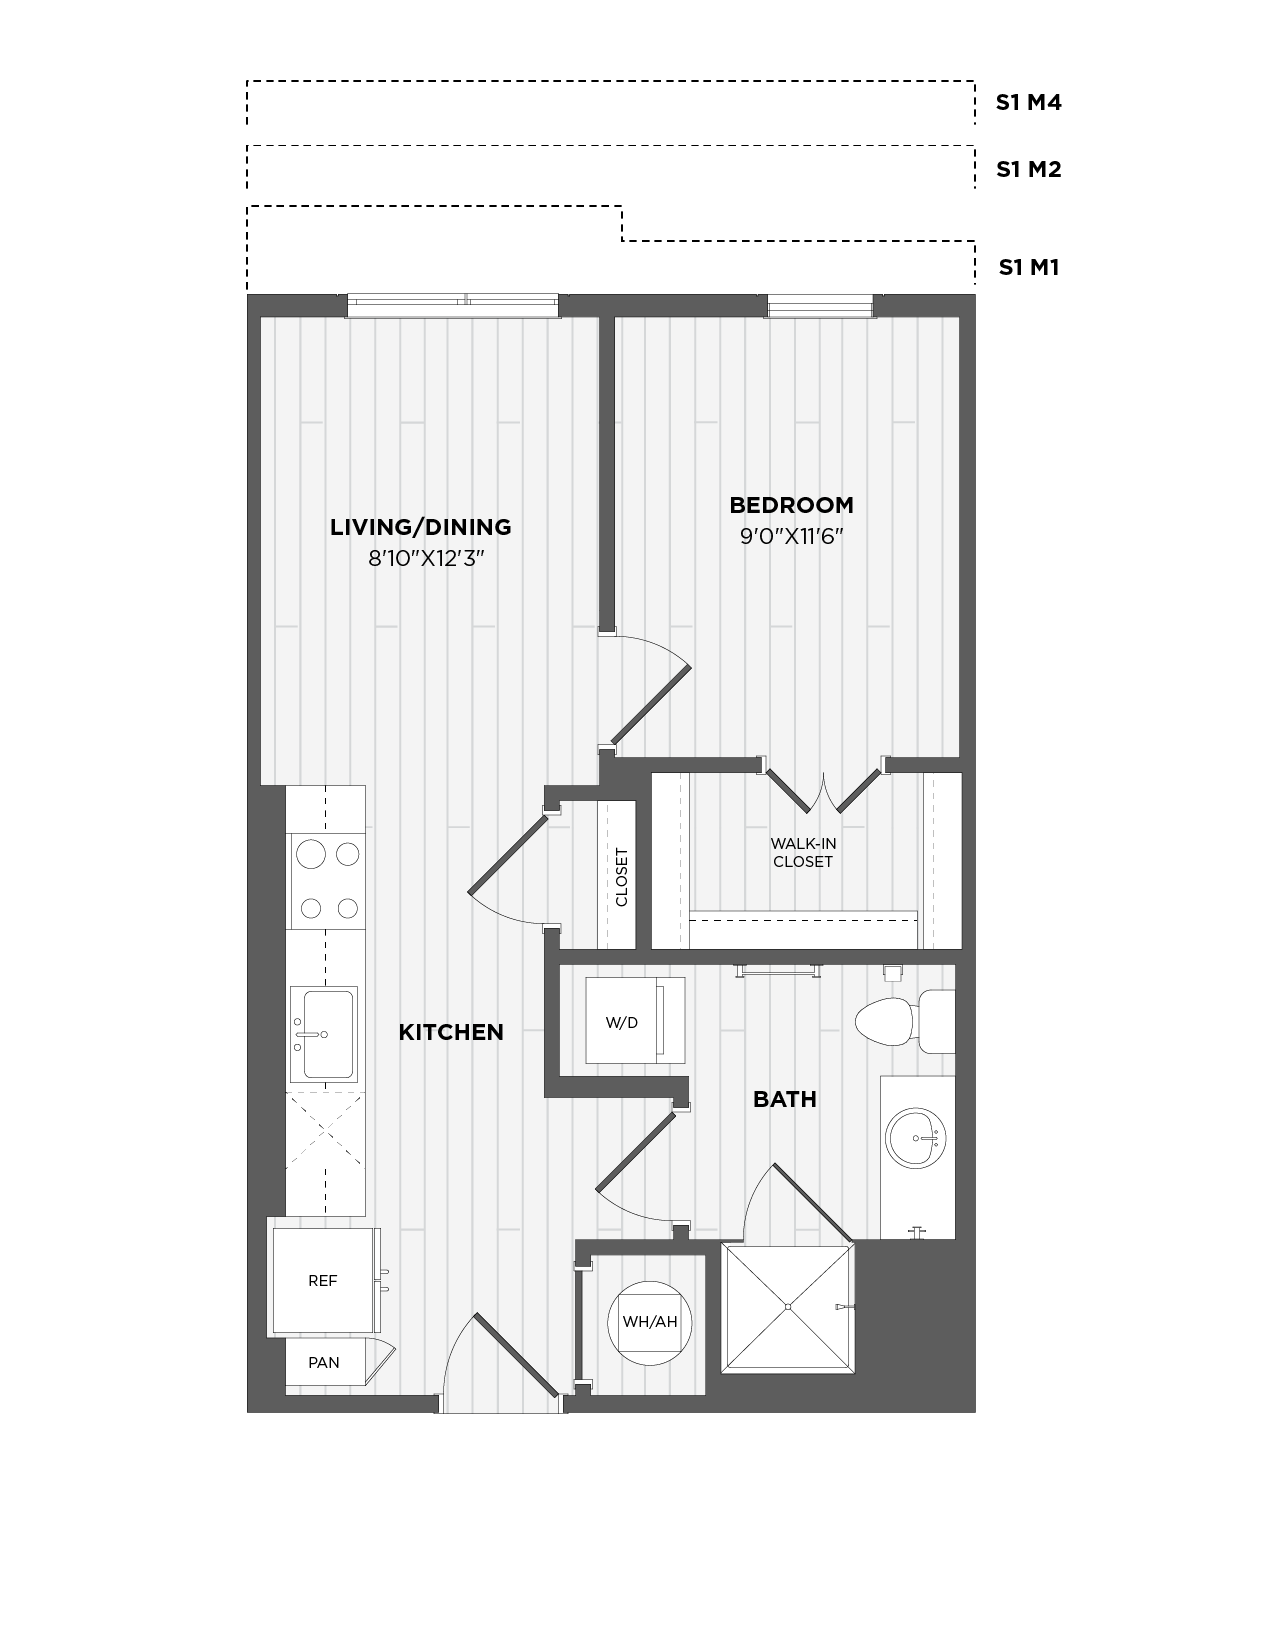 floorplan enlarge view